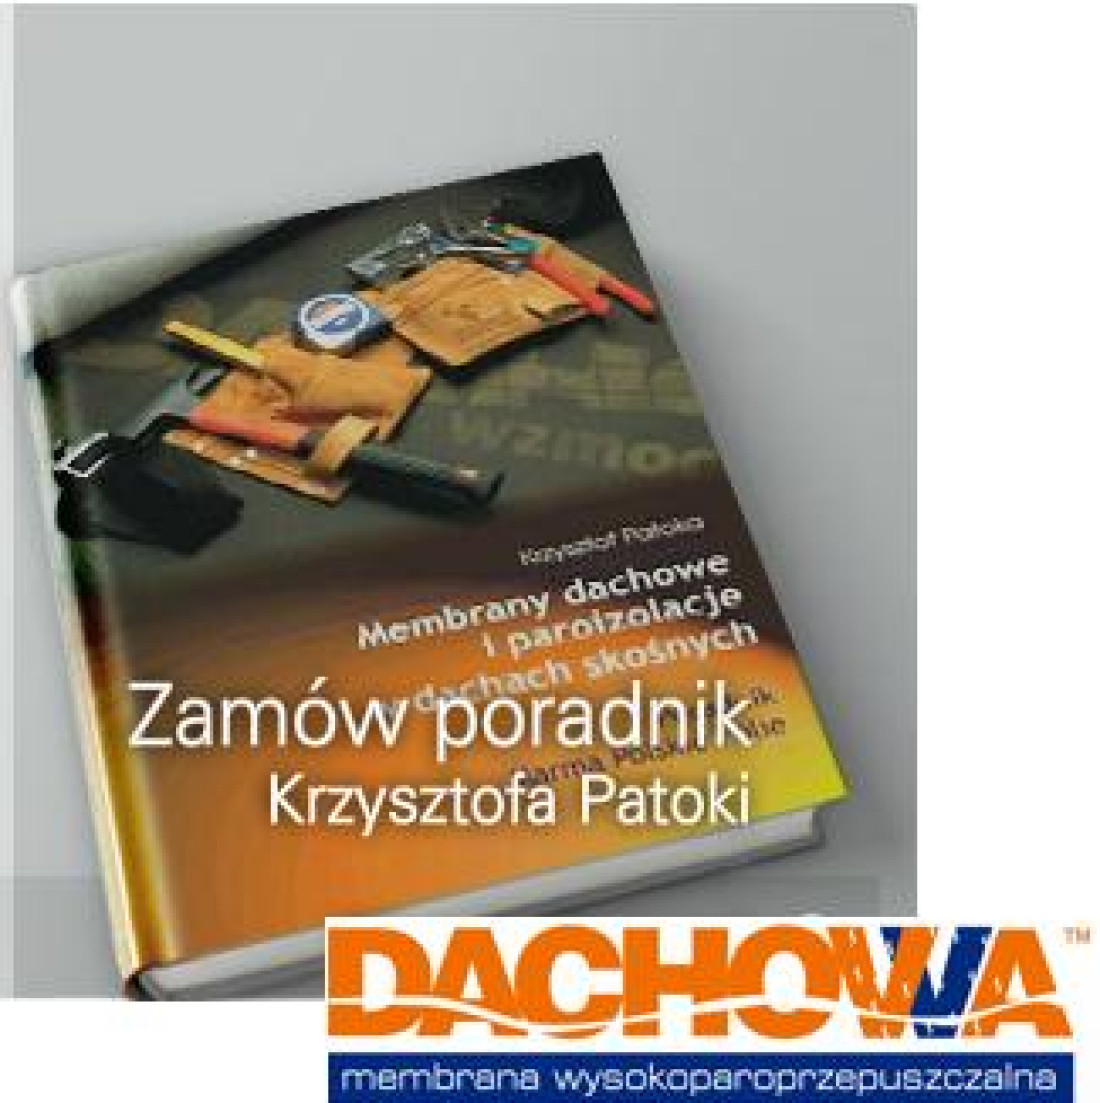 Przepisy dotyczące paroizolacji - Poradnik Krzysztofa Patoki